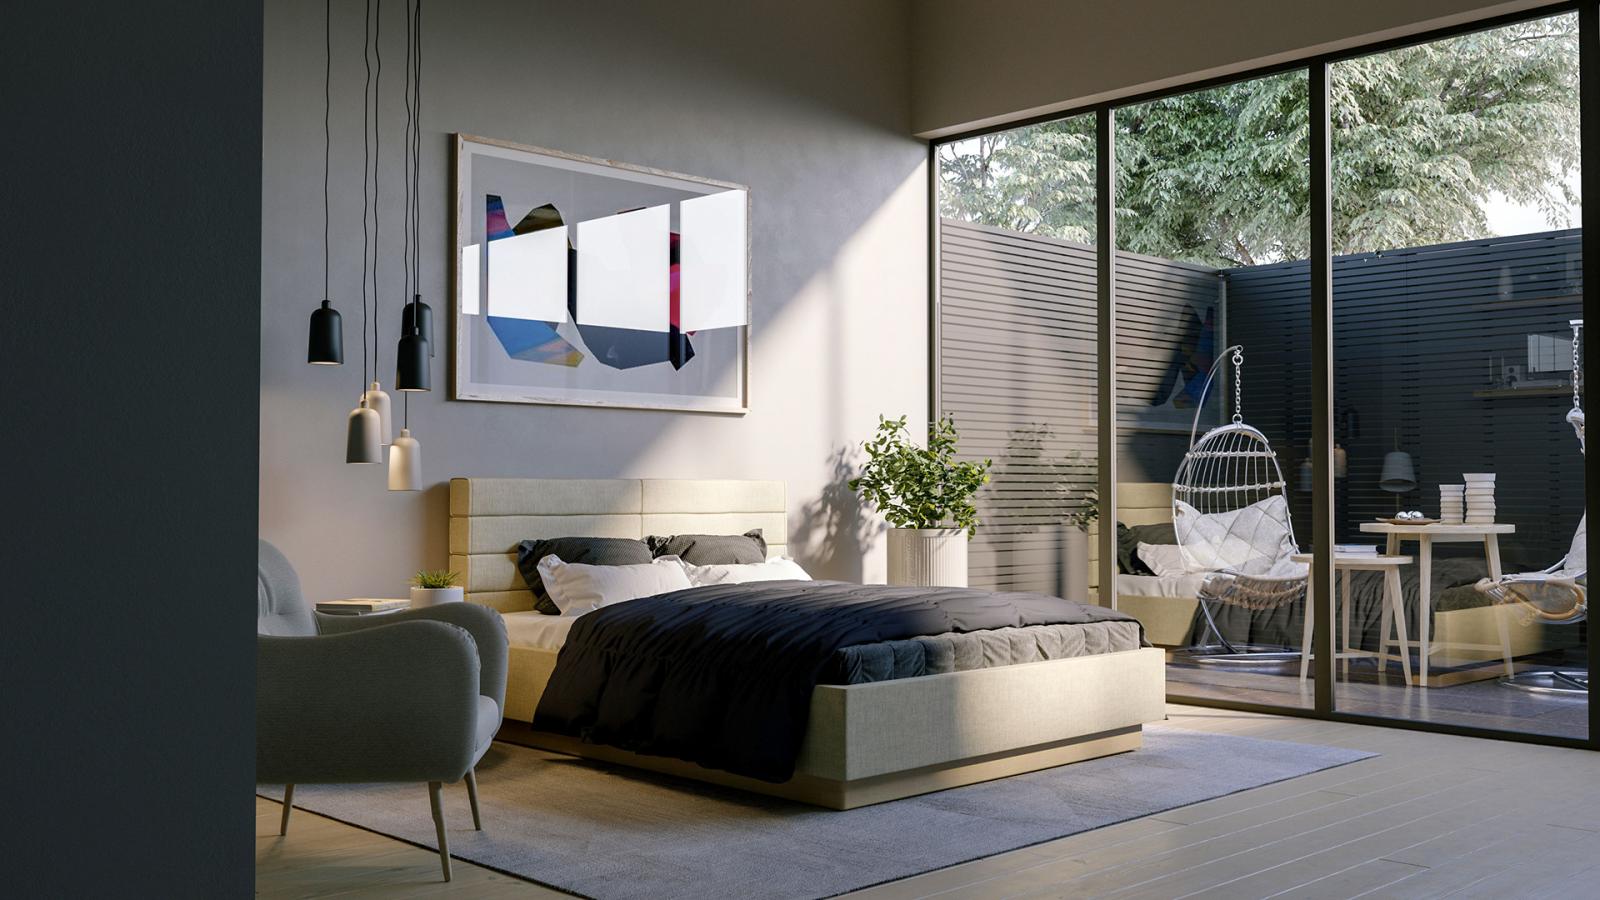 Kiến trúc sư thiết kế phòng ngủ master rộng thoáng, có cửa kính mở ra góc thư giãn sân sau.